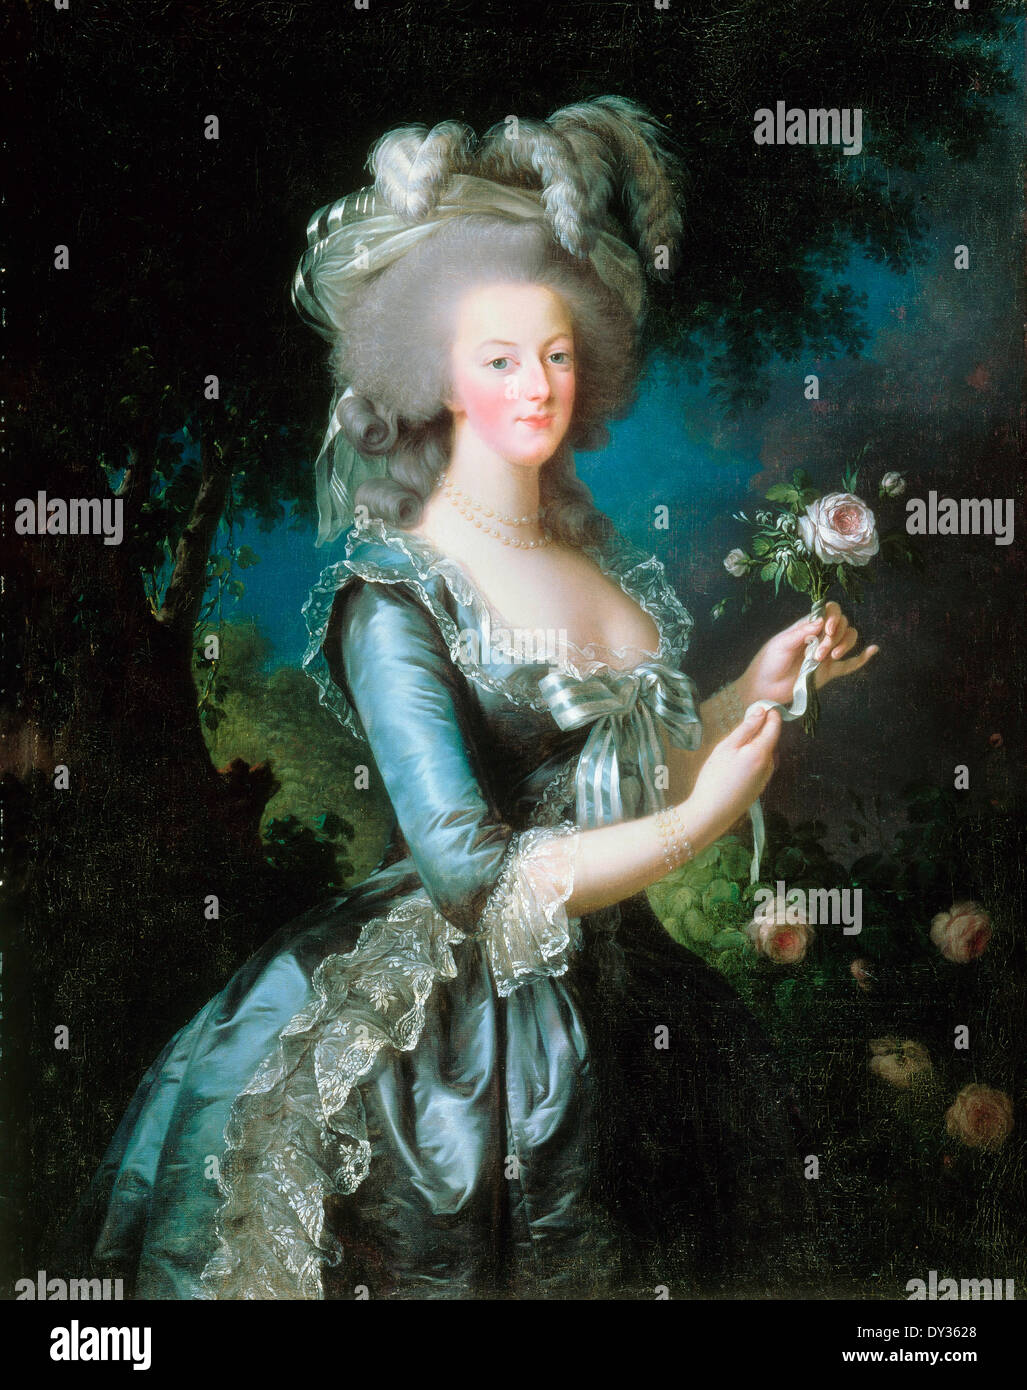 Louise Elisabeth Vigee Le Brun, Marie-Antoinette mit dem Rose 1783-Öl auf Leinwand. Schloss von Versailles, Frankreich. Stockfoto